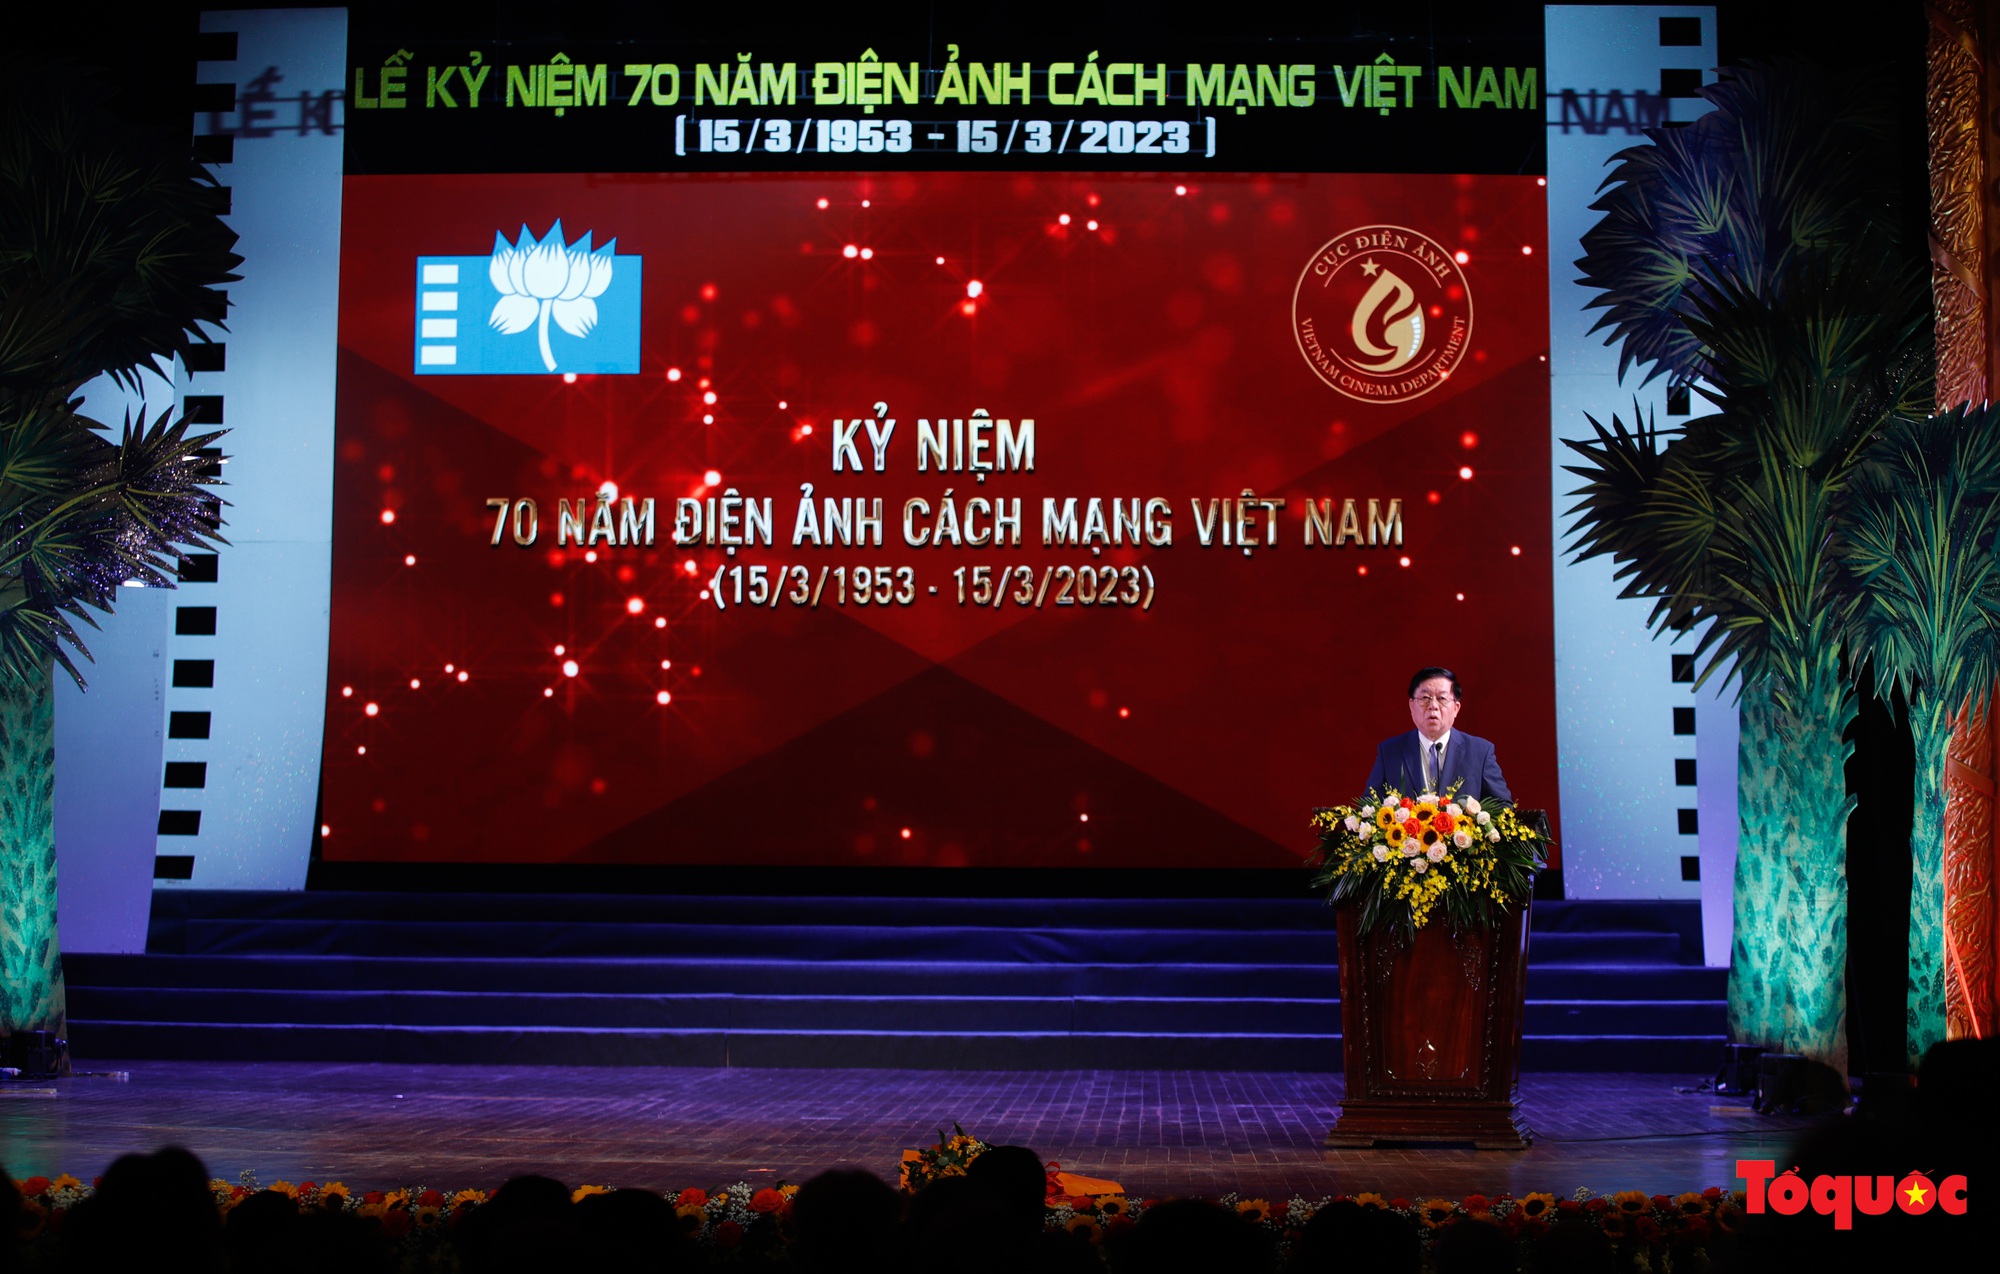 Kỷ niệm 70 năm điện ảnh cách mạng Việt Nam - Ảnh 5.